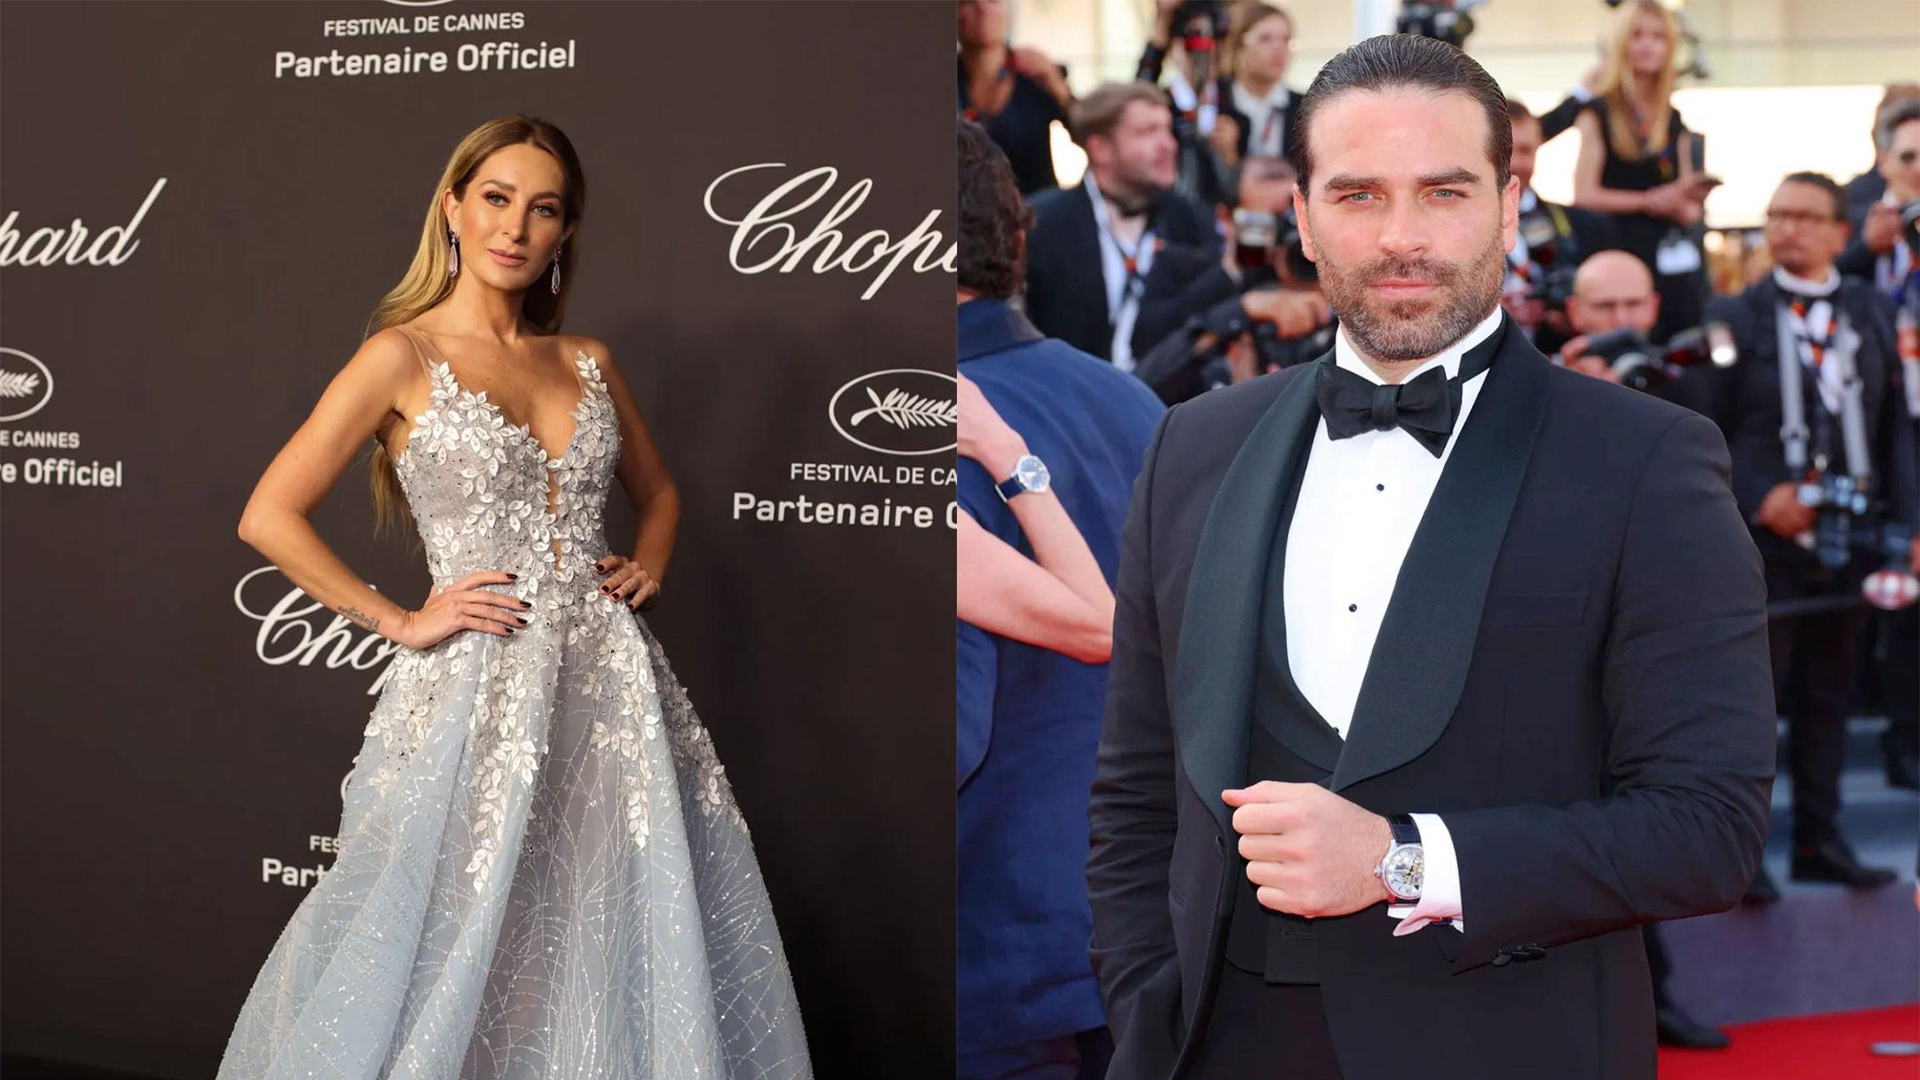 Los dos famosos asistieron a la gala de Cannes 2022 en Francia
Instagram @geraldinebazan y @alenones